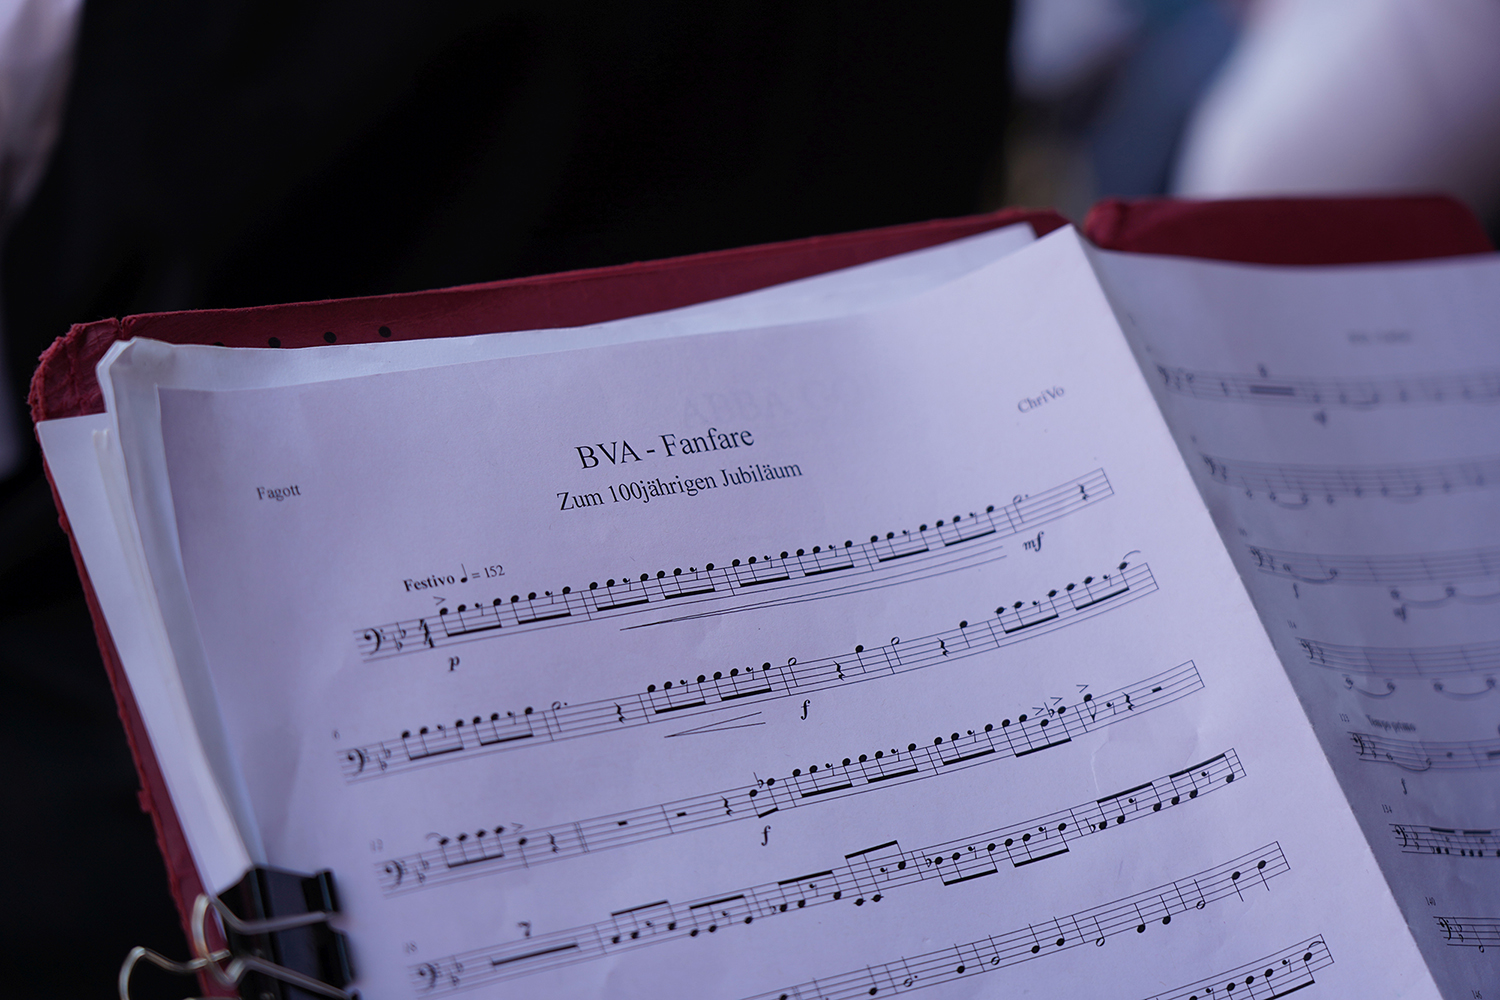 Detailaufnahme der Fagott-Noten der BVA-Fanfare von Christian VoÃŸ